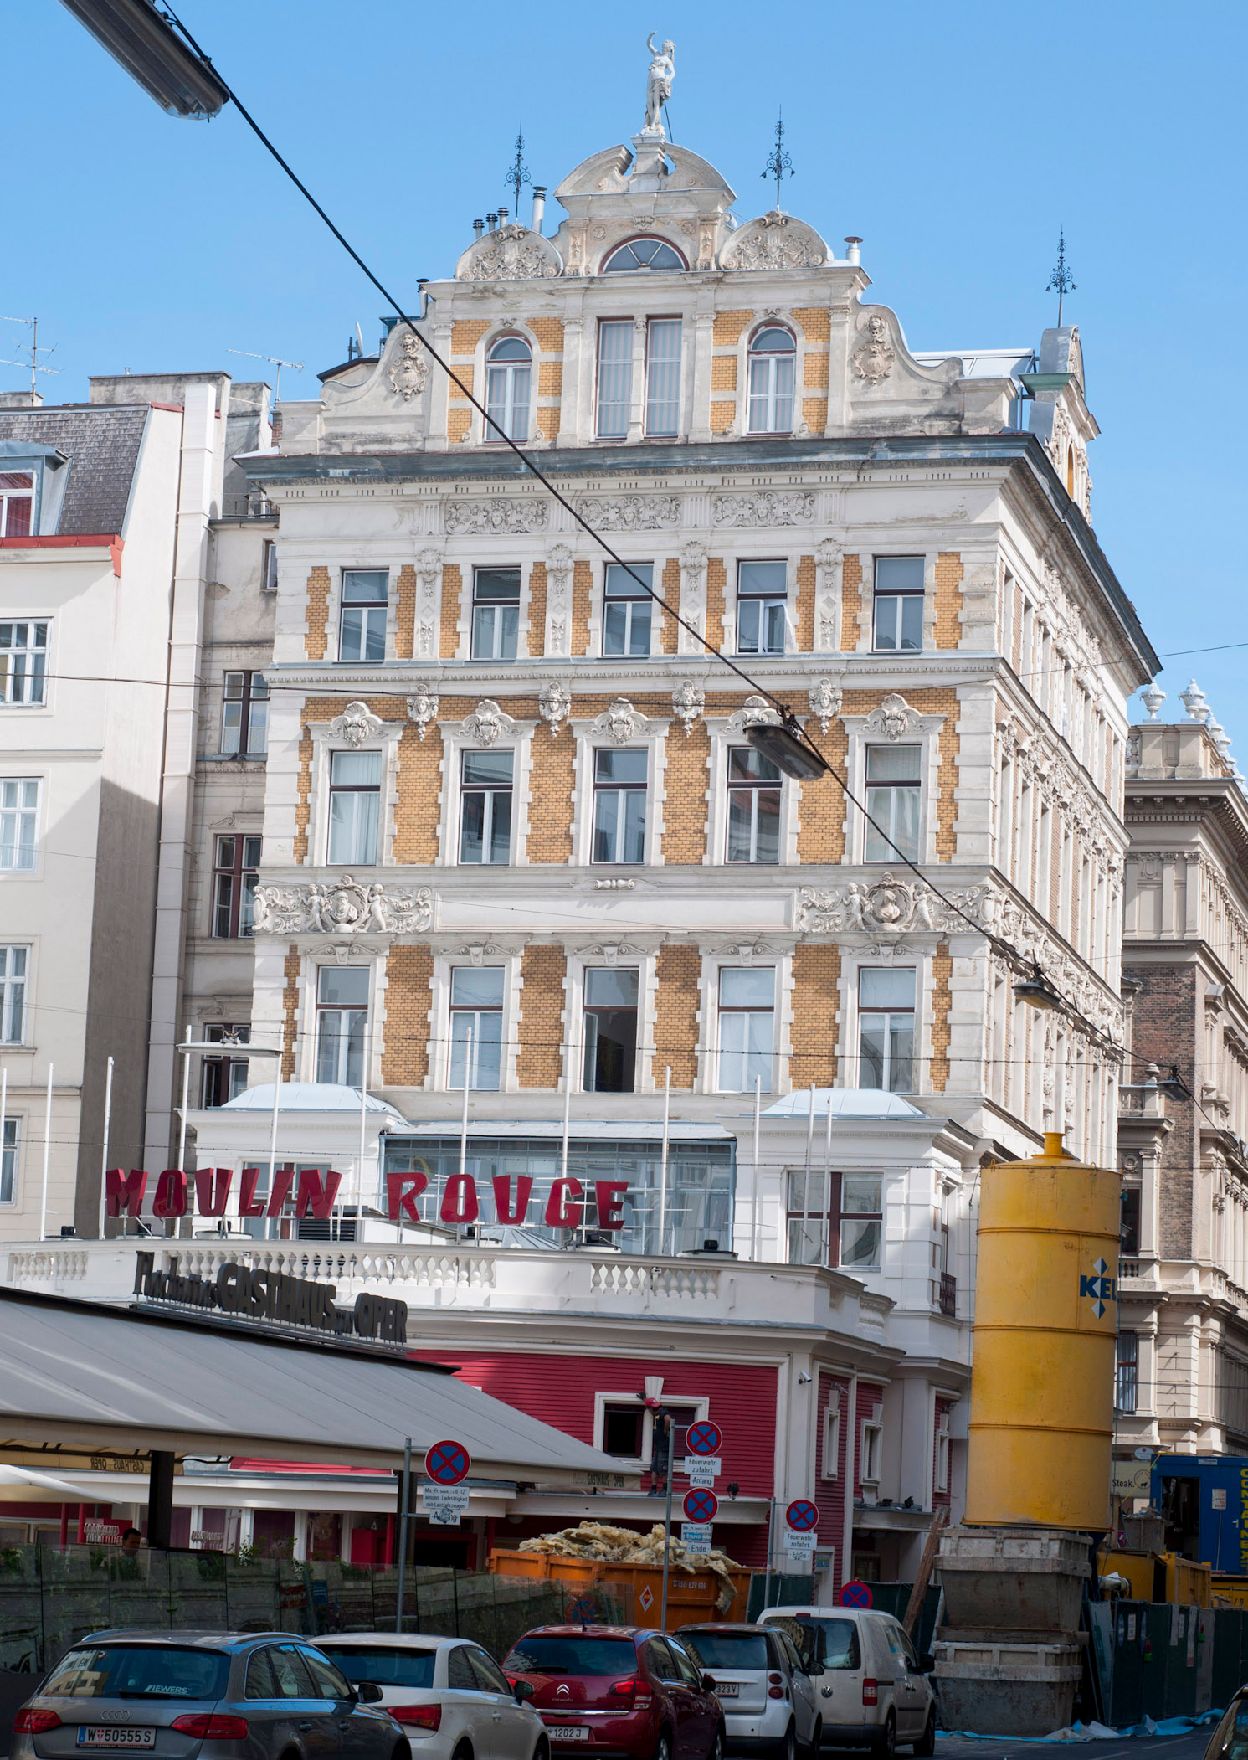 Das Veranstaltungslokal Moulin Rouge in der Walfischgasse. Schlagworte: Architektur, Gebäude, Lokal, Sehenswürdigkeit, Stadtlandschaft